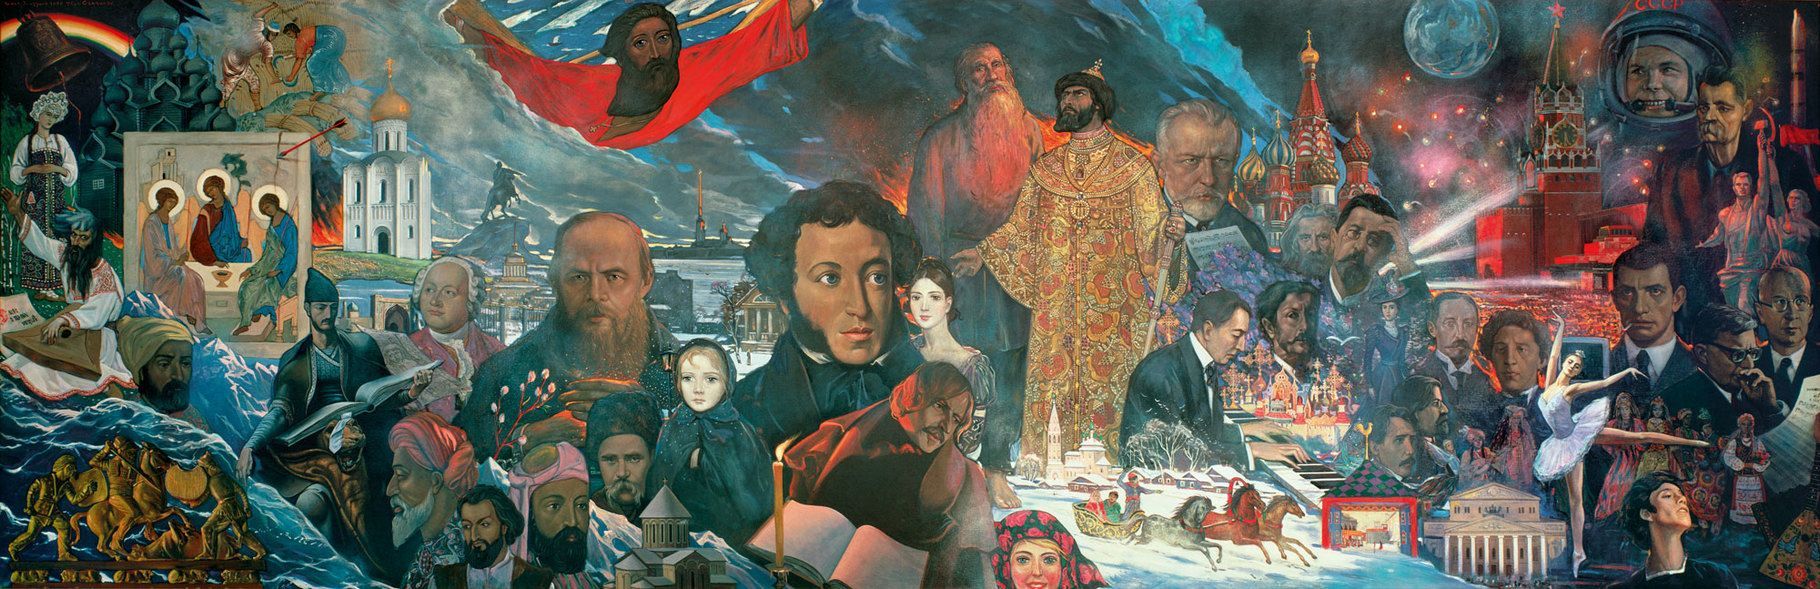 El código civilizatorio ruso versus el código occidental Por Alexander Dugin | Katehon, Rusia